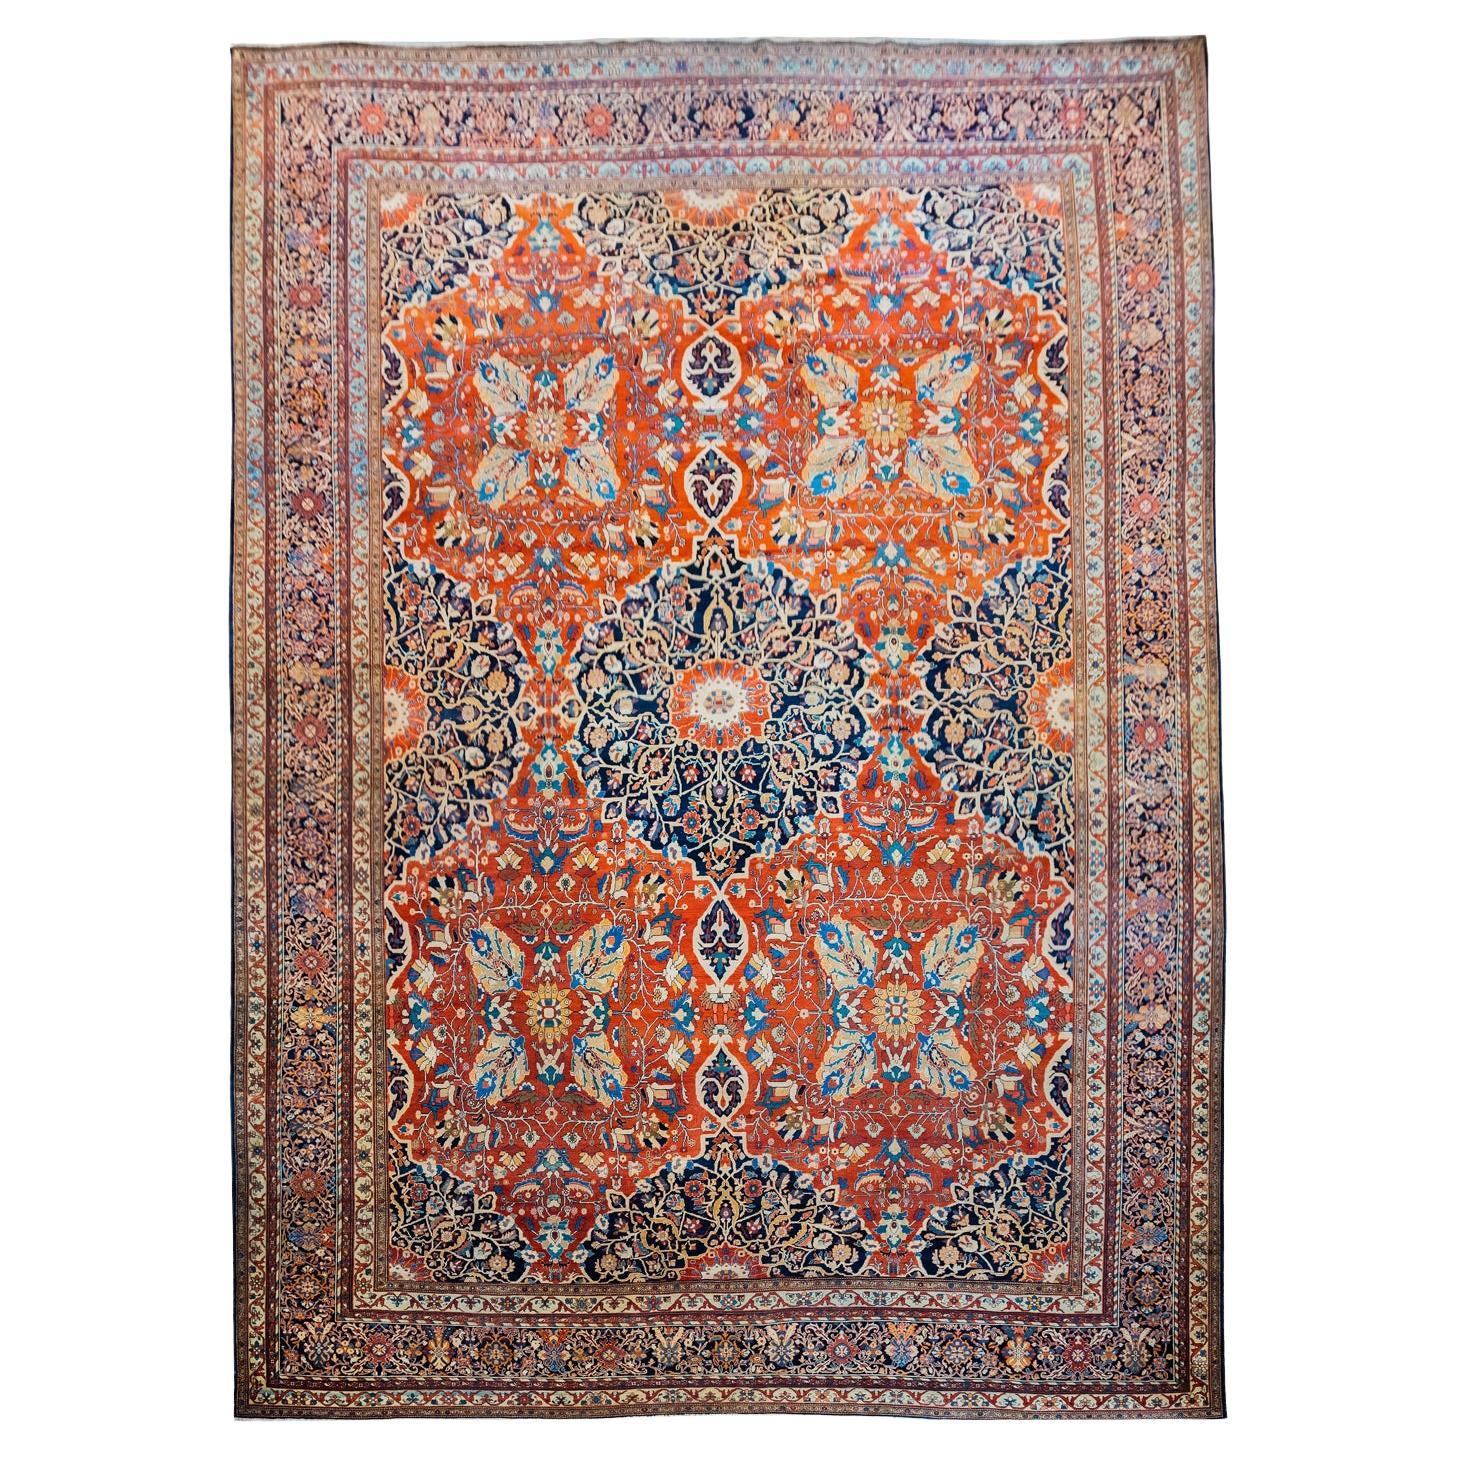 Antiker persischer Farahan-Teppich aus Wolle, handgeknüpft, Rot, Indigo, Creme, 12' x 17'